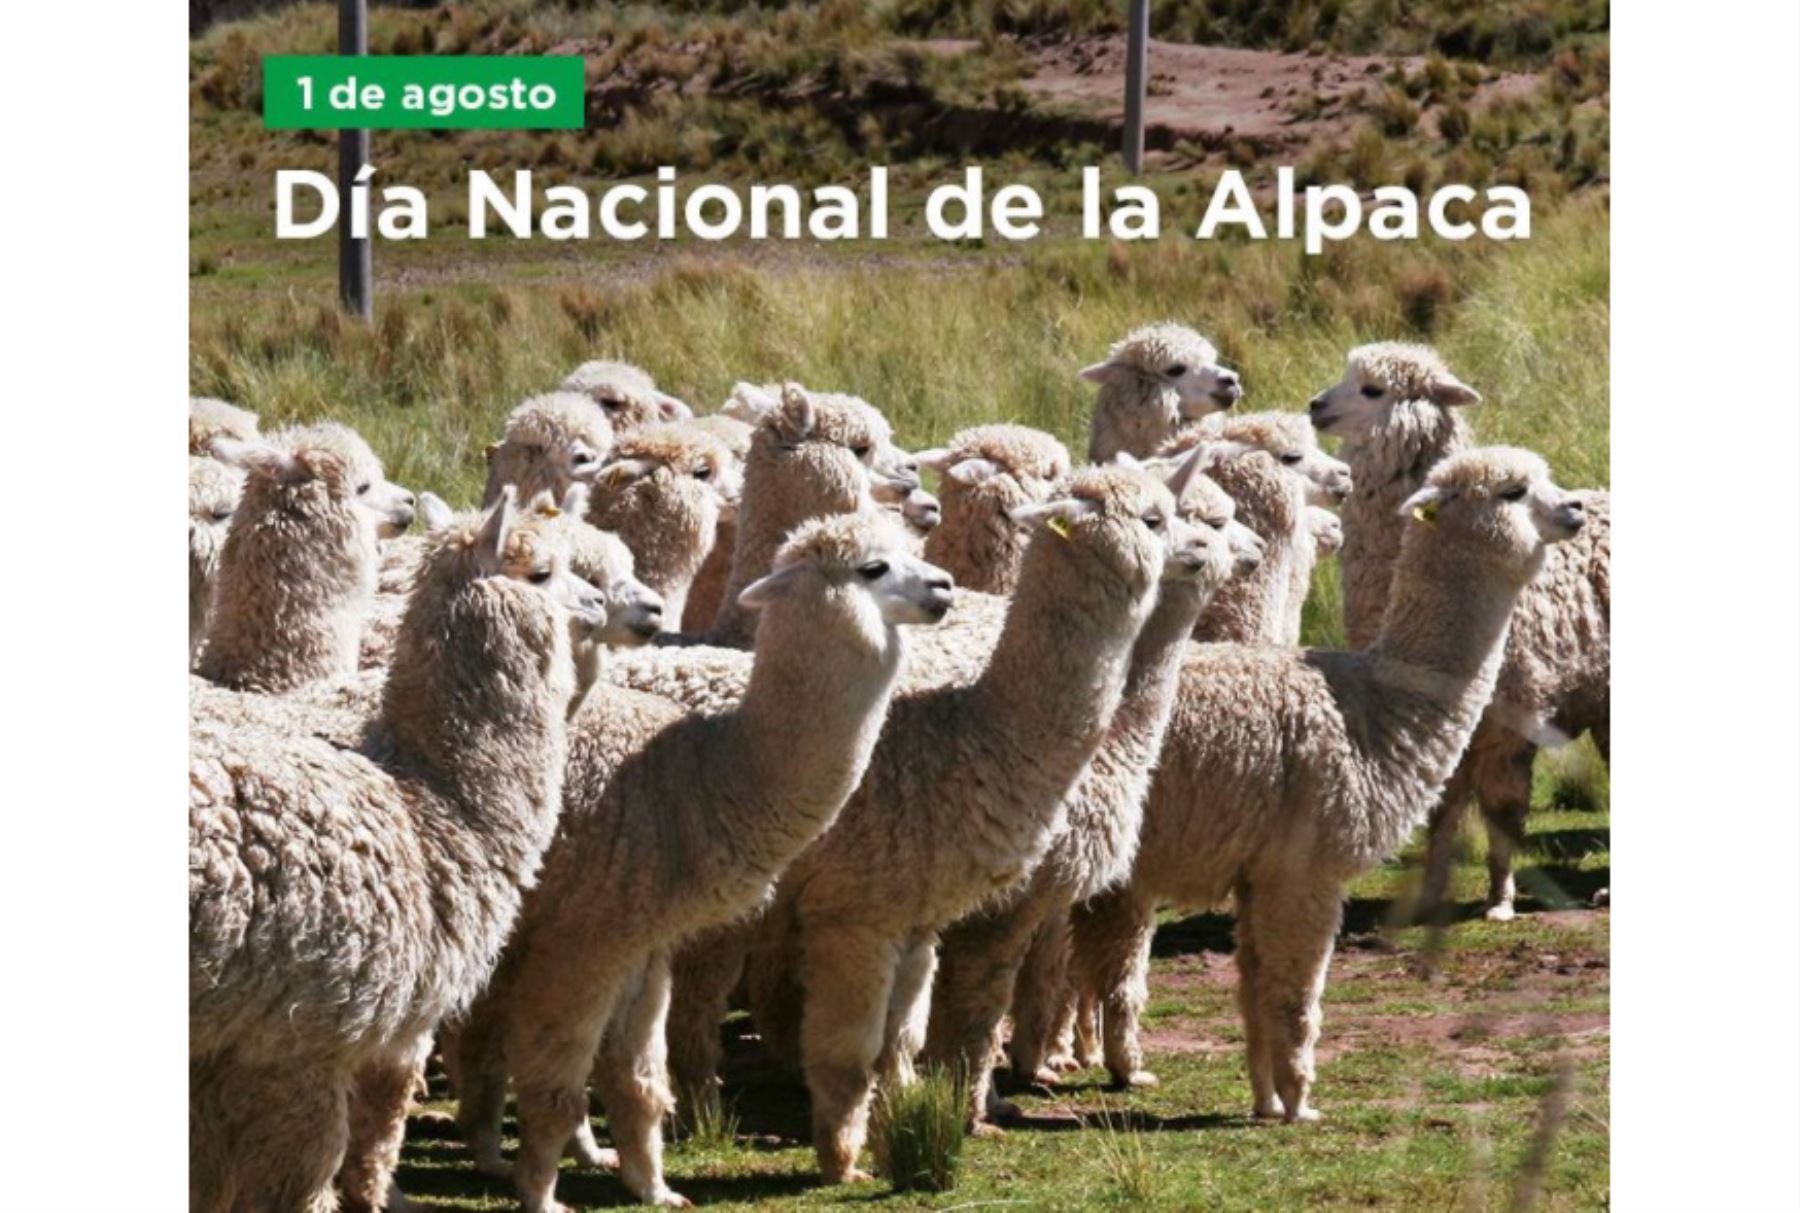 Día Nacional de la Alpaca se celebra el 1 de agosto